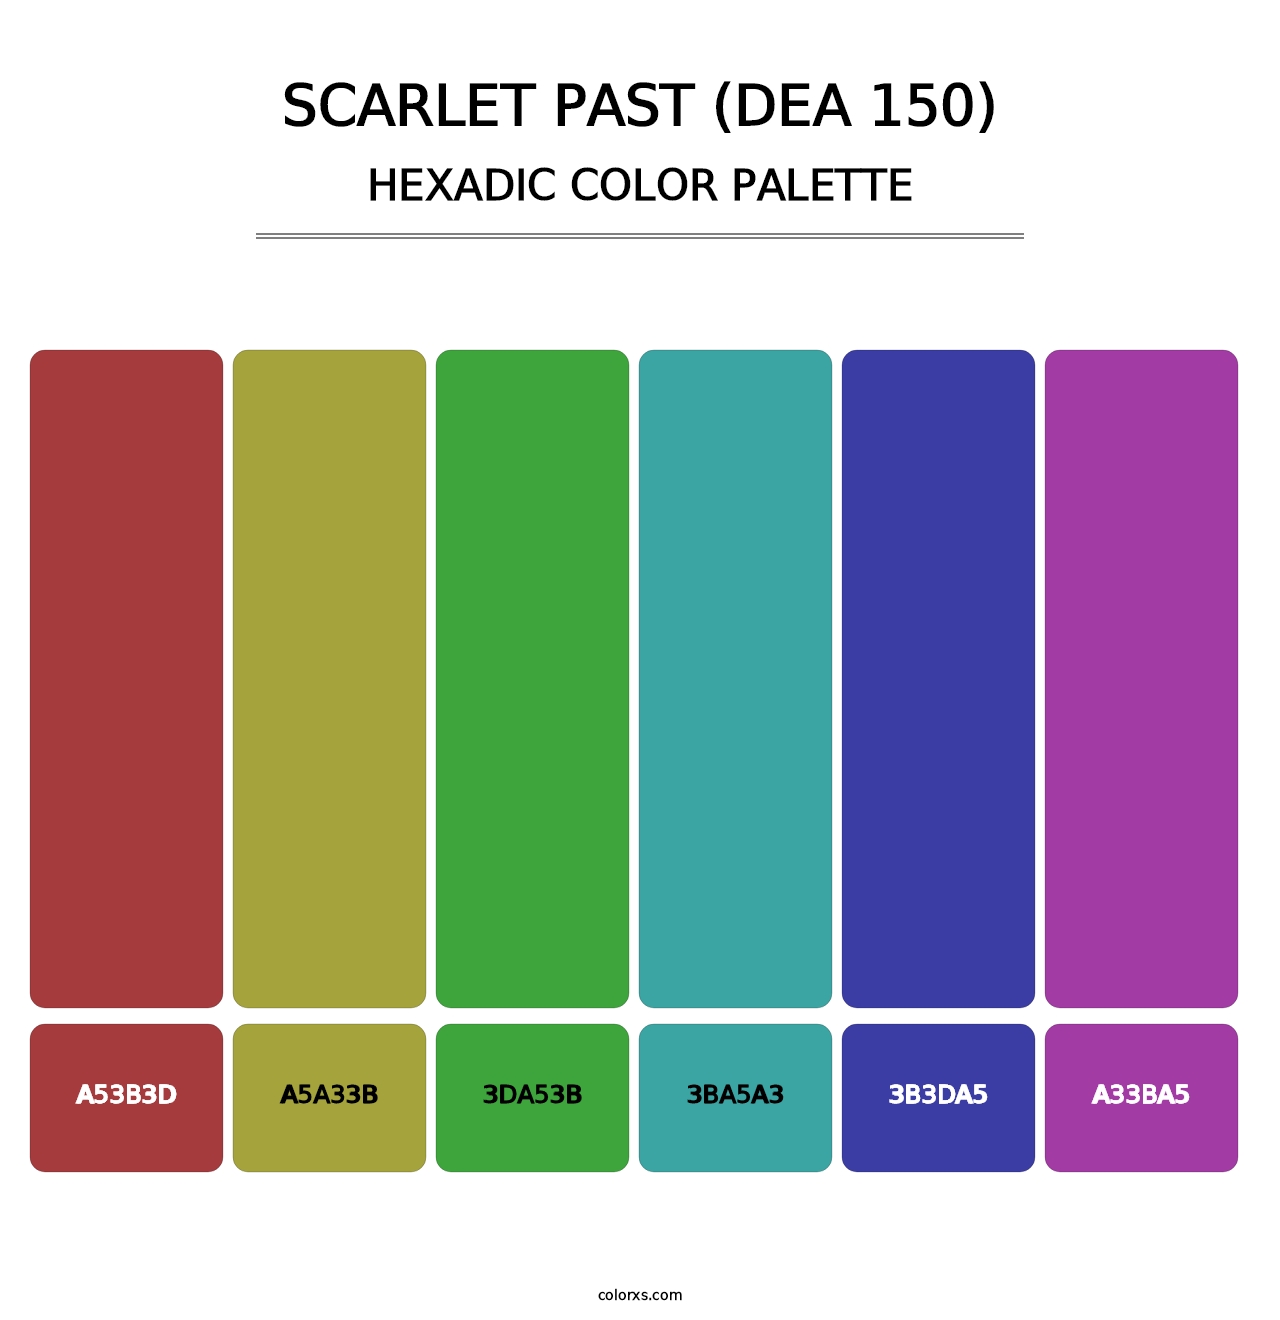 Scarlet Past (DEA 150) - Hexadic Color Palette